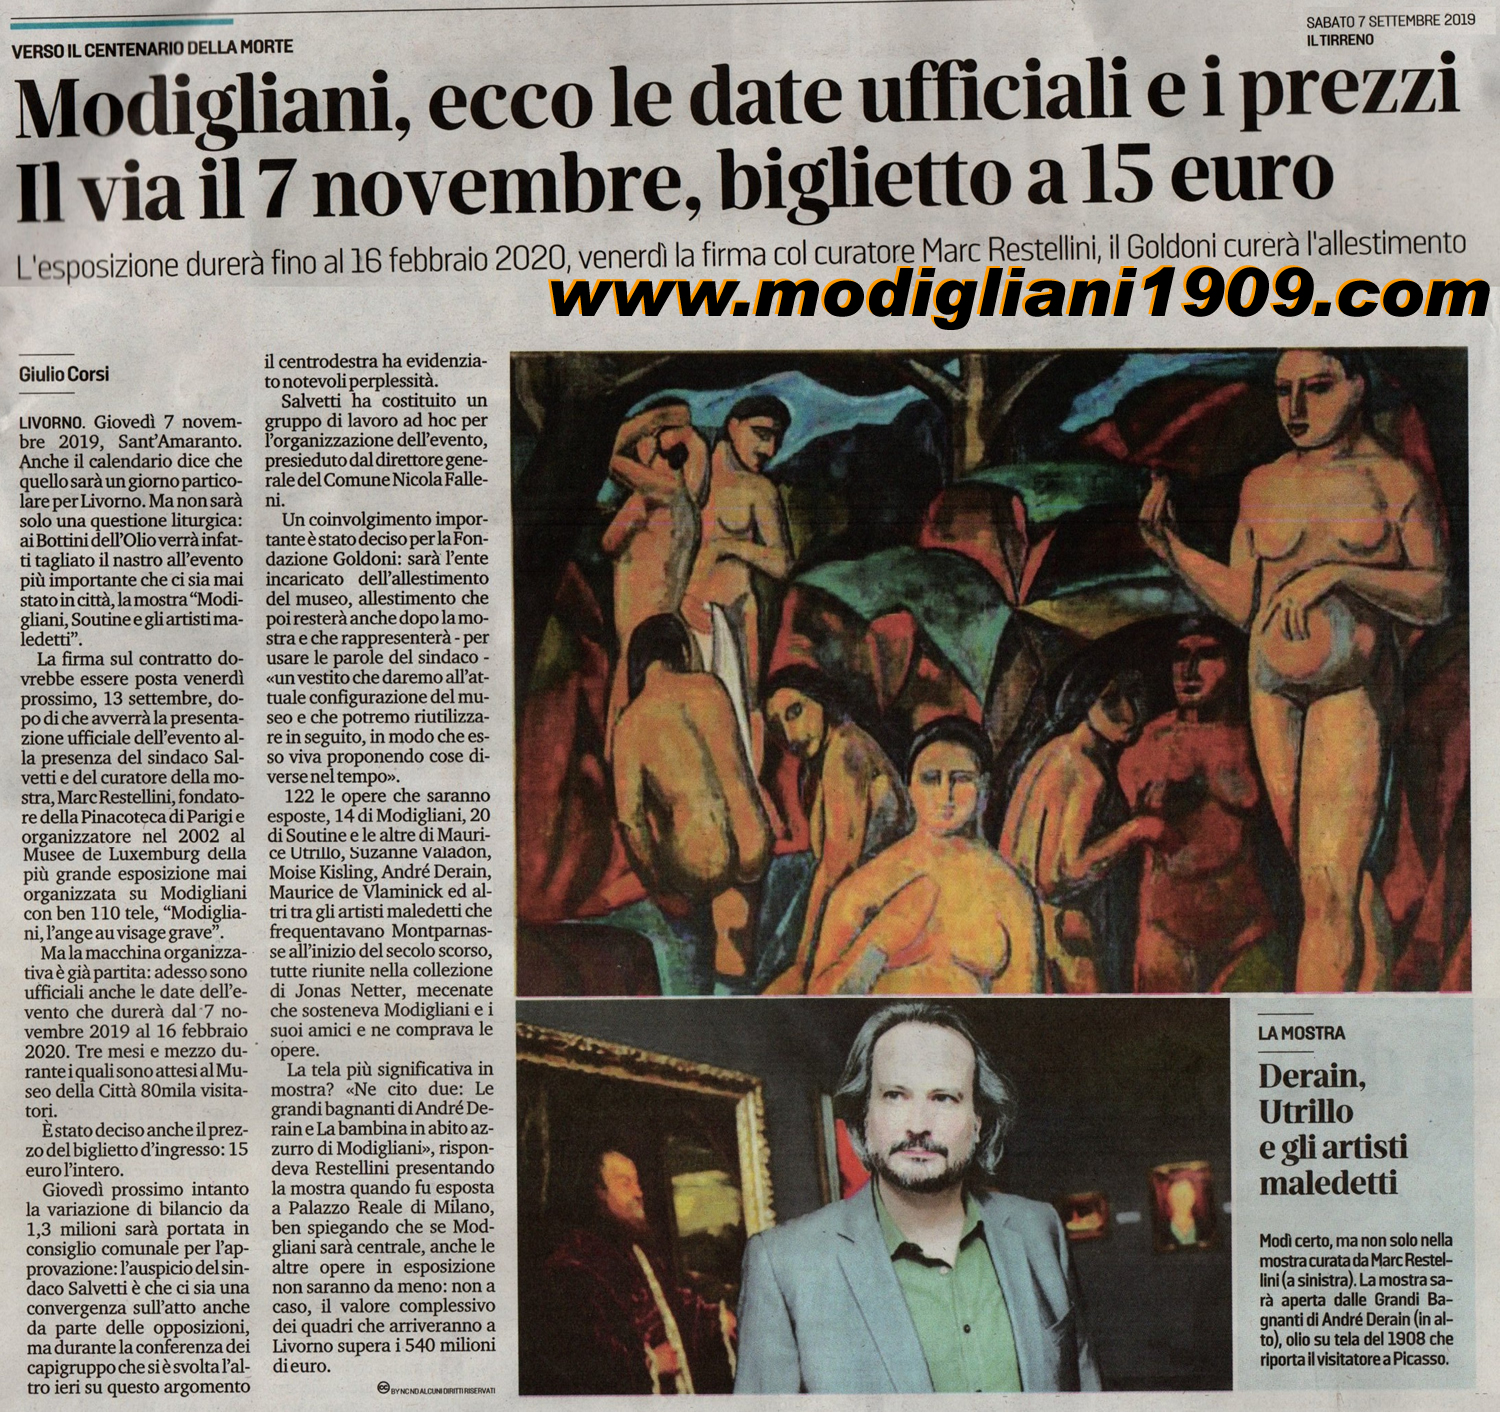 La mostra di Modigliani durerà fino a febbraio 2020 - a breve la firma col curatore Marc Restellini - il Goldoni curerà l'allestimento